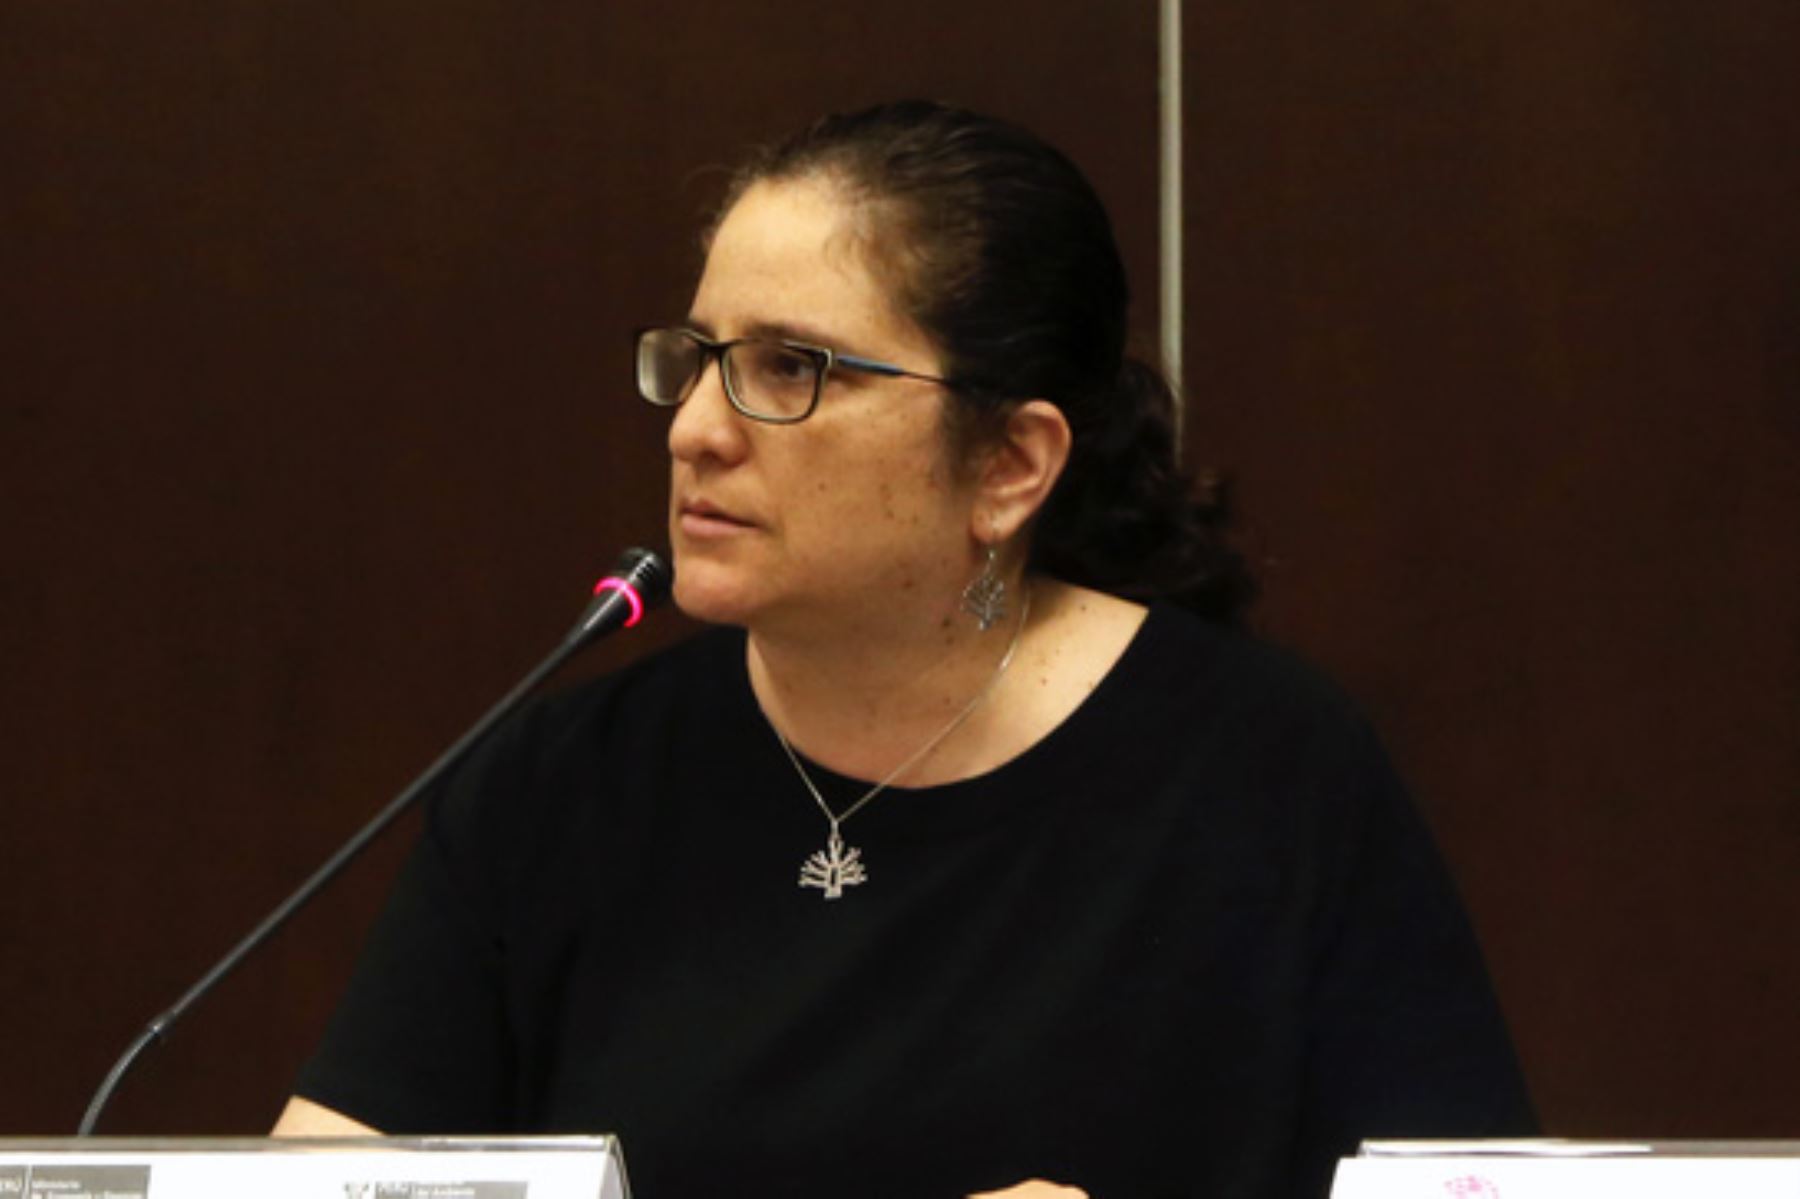 La ministra del Ambiente, Lucía Ruíz Ostoic, sostuvo que en su sector se continúa una línea de trabajo enfocada en mejorar la calidad de vida de la población, con base en la gestión adecuada de residuos sólidos y la lucha frontal contra la deforestación.